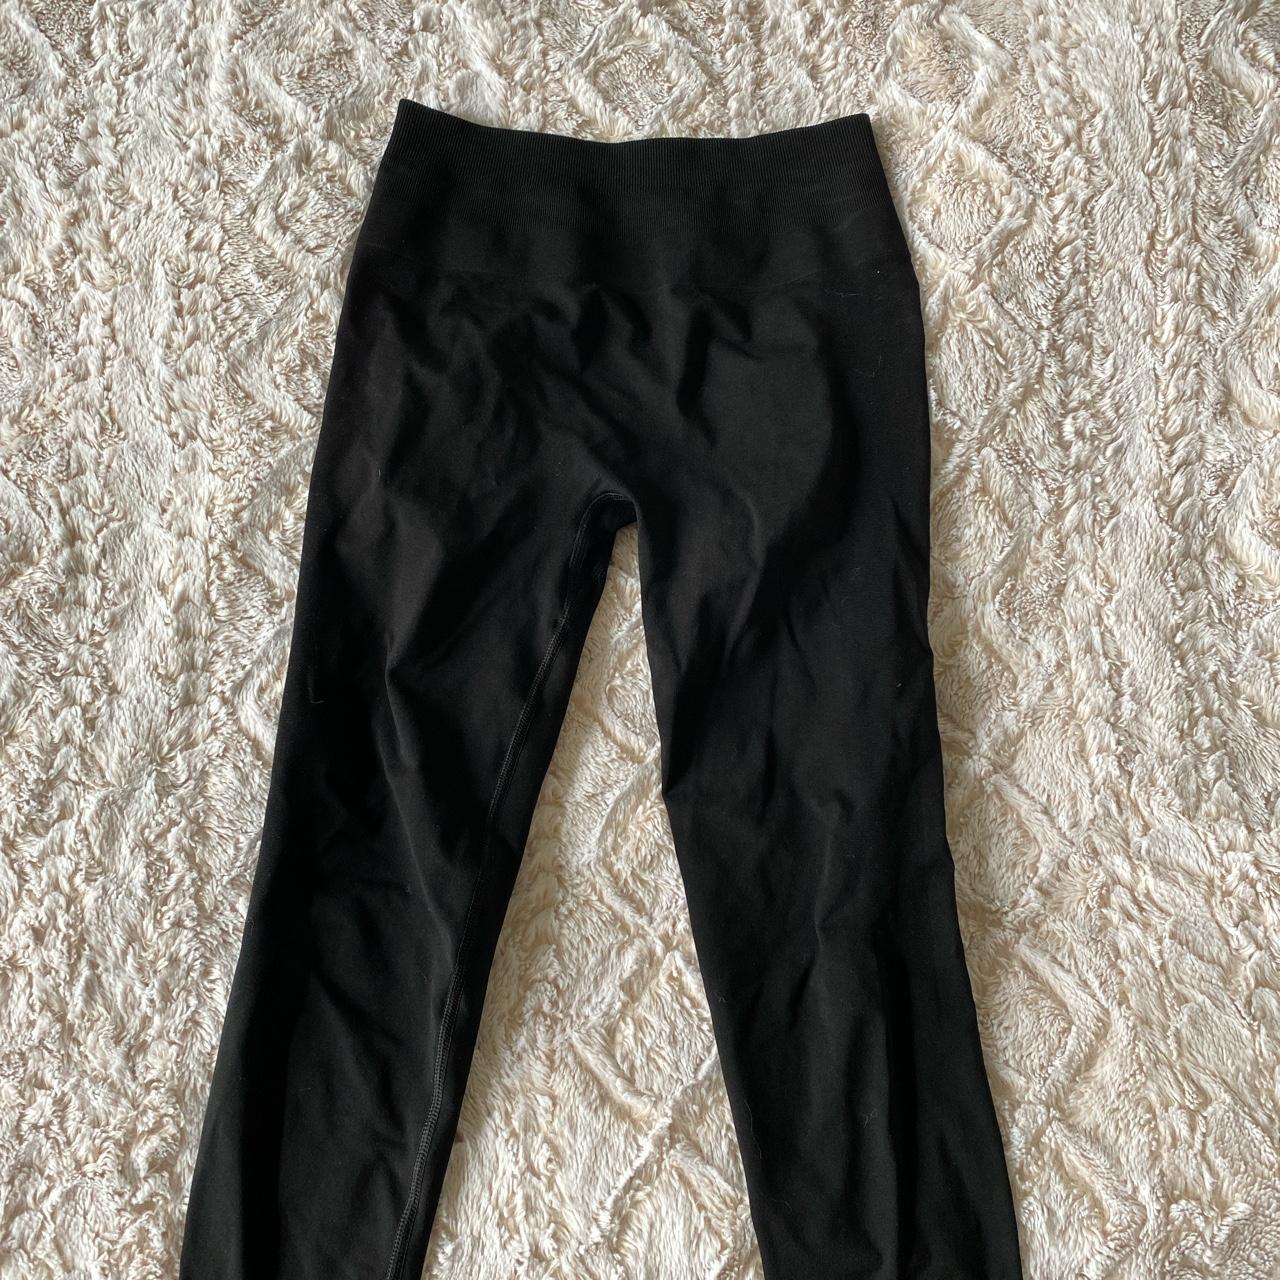 Black Alphalete leggings - Black full length - Depop